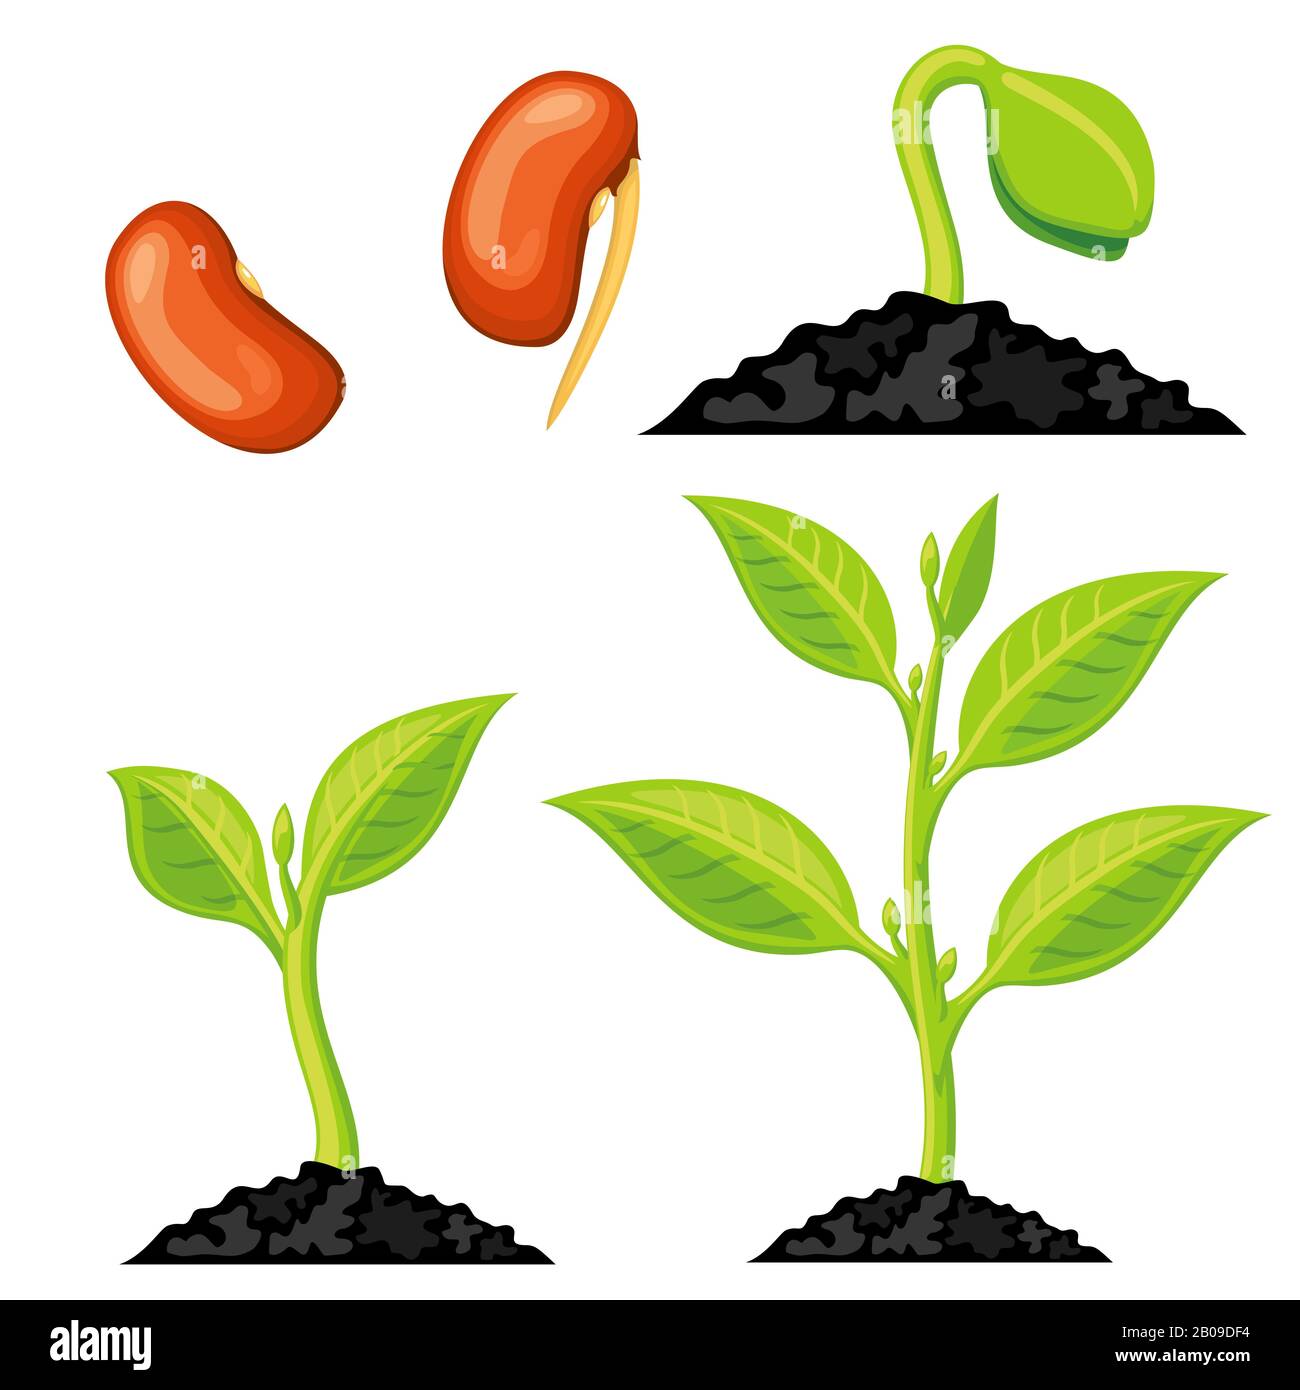 La croissance des plantes passe de la semence au germe. Plante de culture biologique, plante verte de nature isolée. Illustration vectorielle Illustration de Vecteur